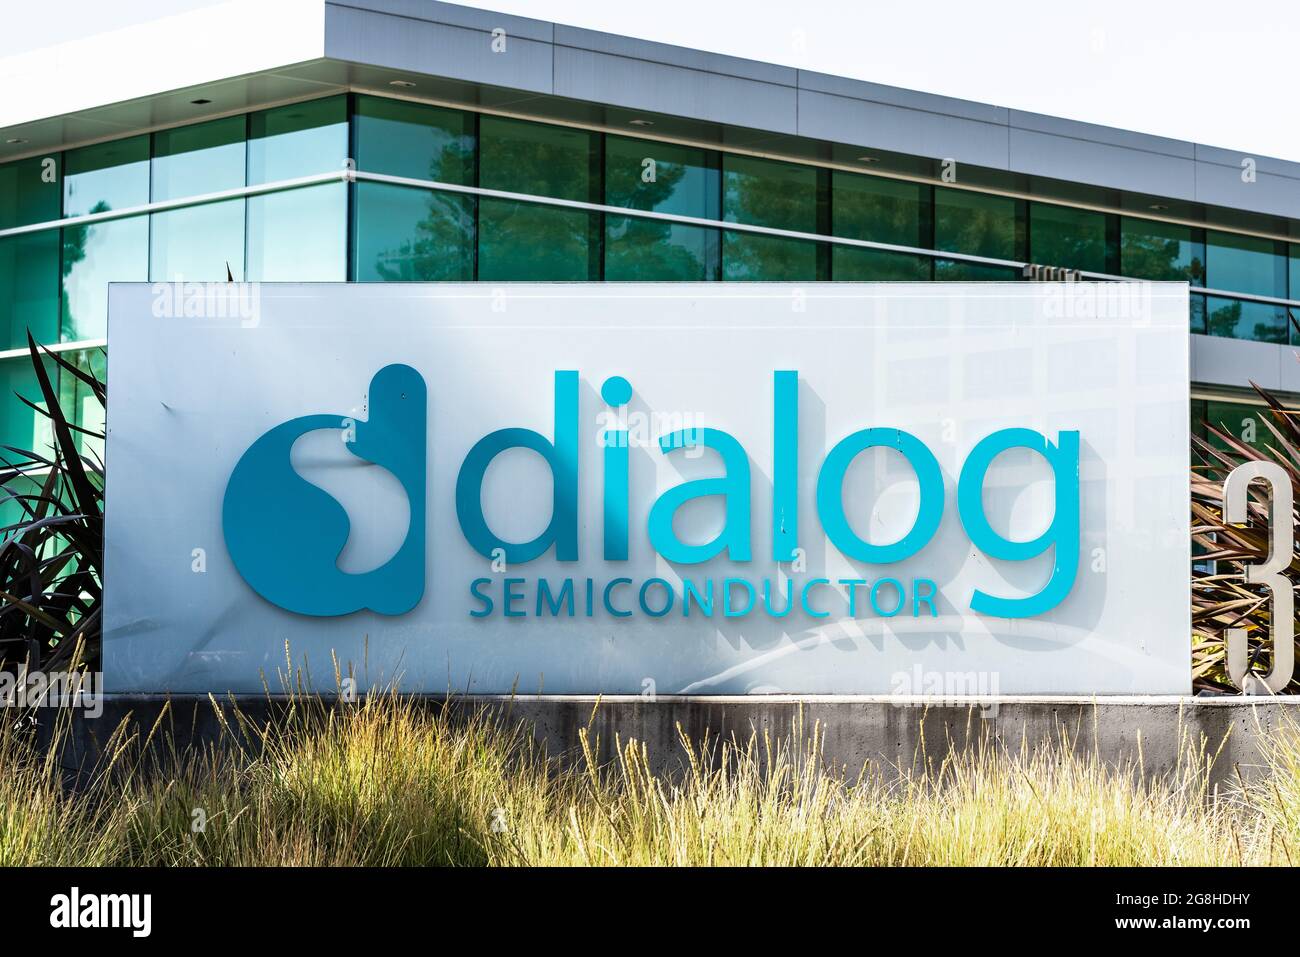 Sep 16, 2020 Santa Clara / CA / USA - DIALOG Semiconductor SIGN en Silicon Valley HQ; DIALOG Semiconductor PLC es un fabricante de semiconductores Foto de stock